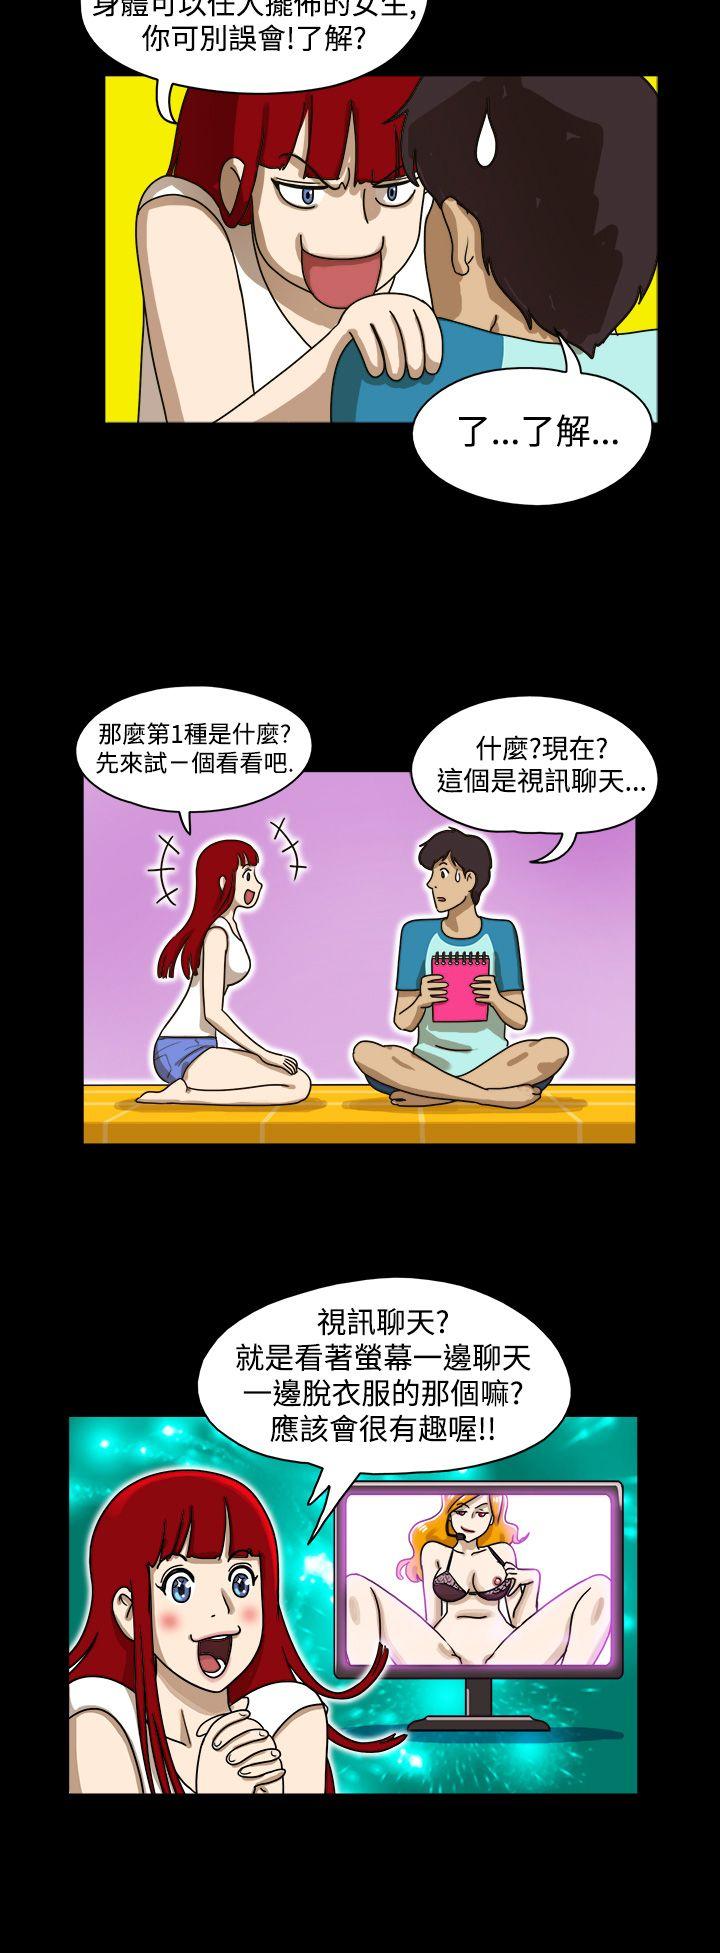 韩国污漫画 17種性幻想第一季 第3话 6